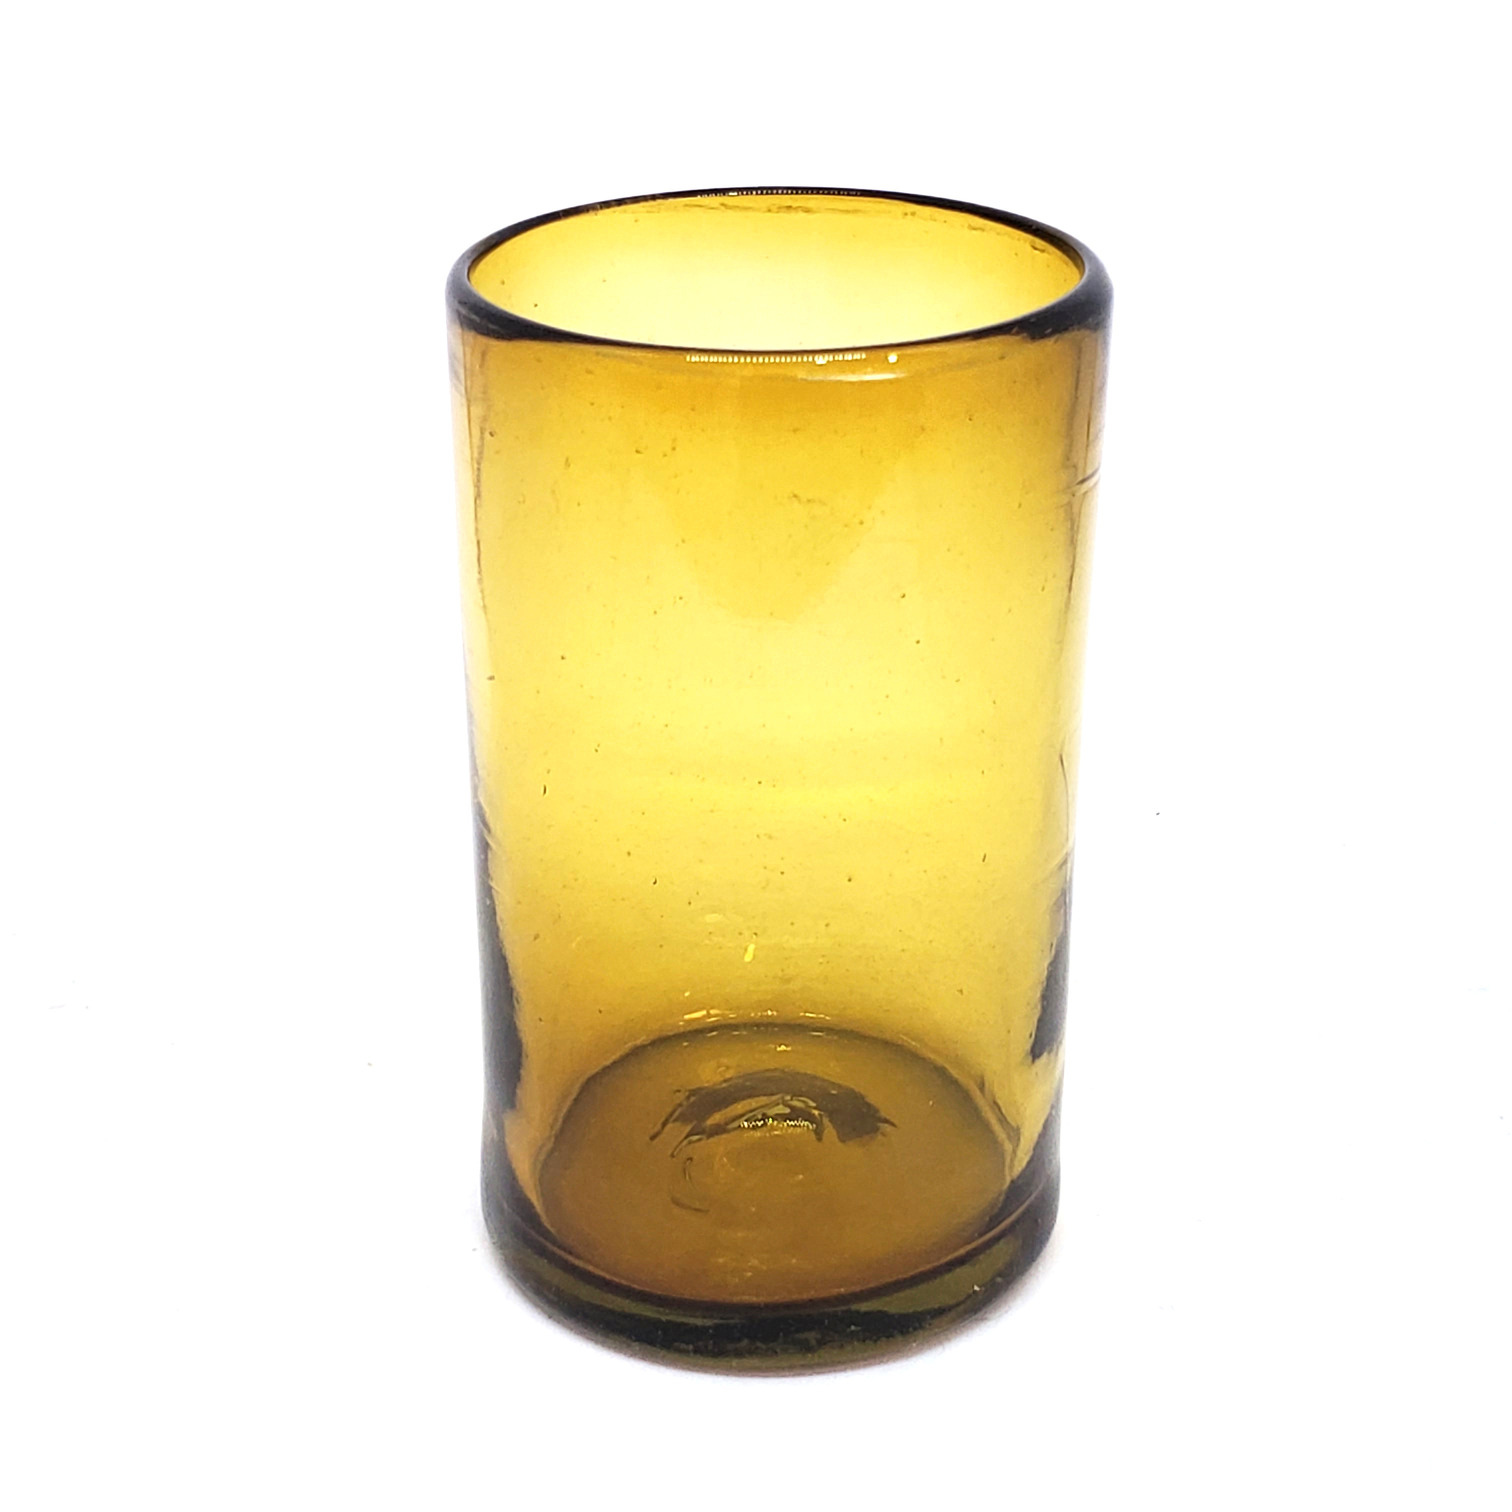 Ofertas / Juego de 6 vasos grandes color ambar / Éstos artesanales vasos le darán un toque clásico a su bebida favorita.